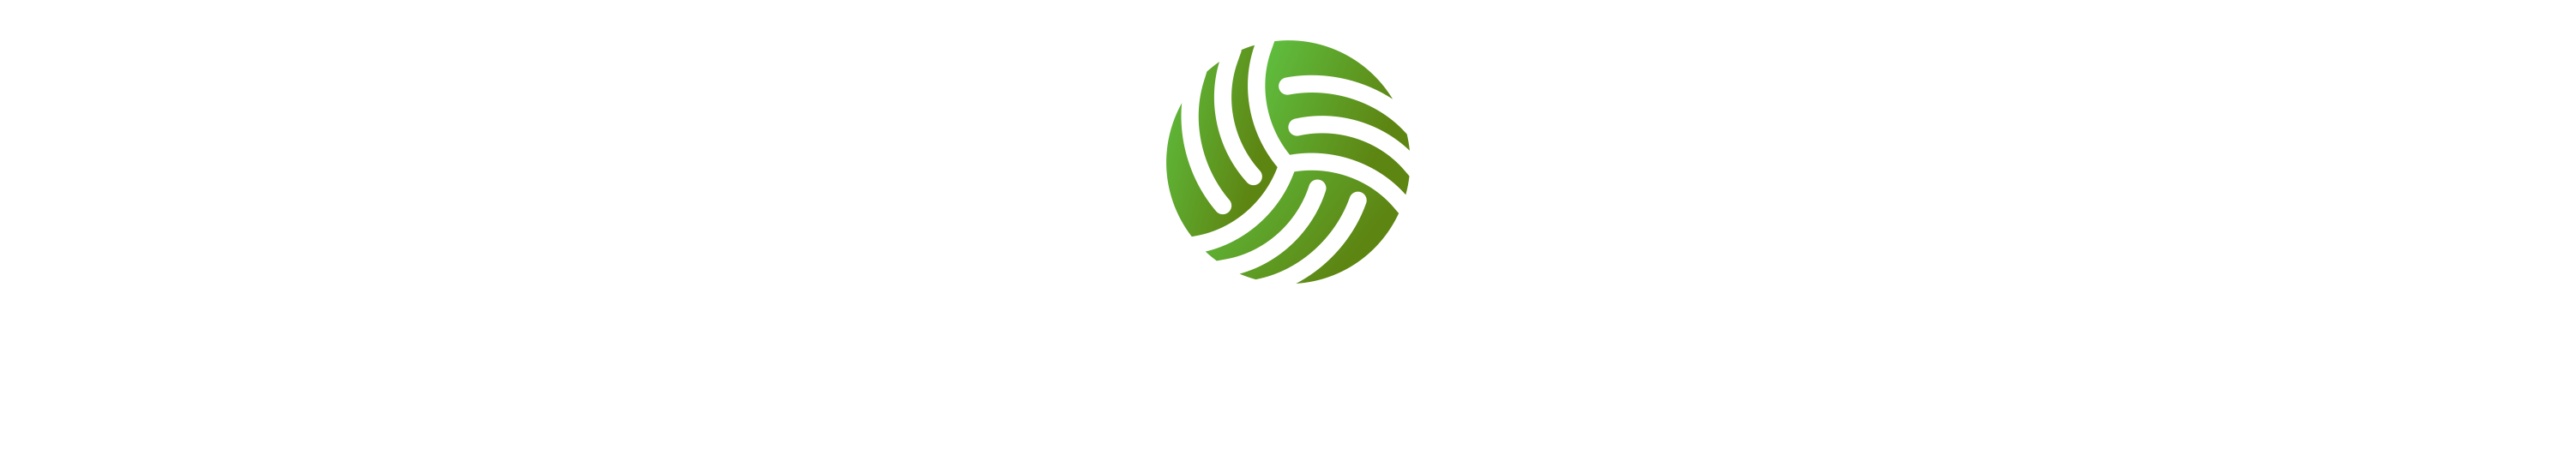 Mercy Moim foundation logo